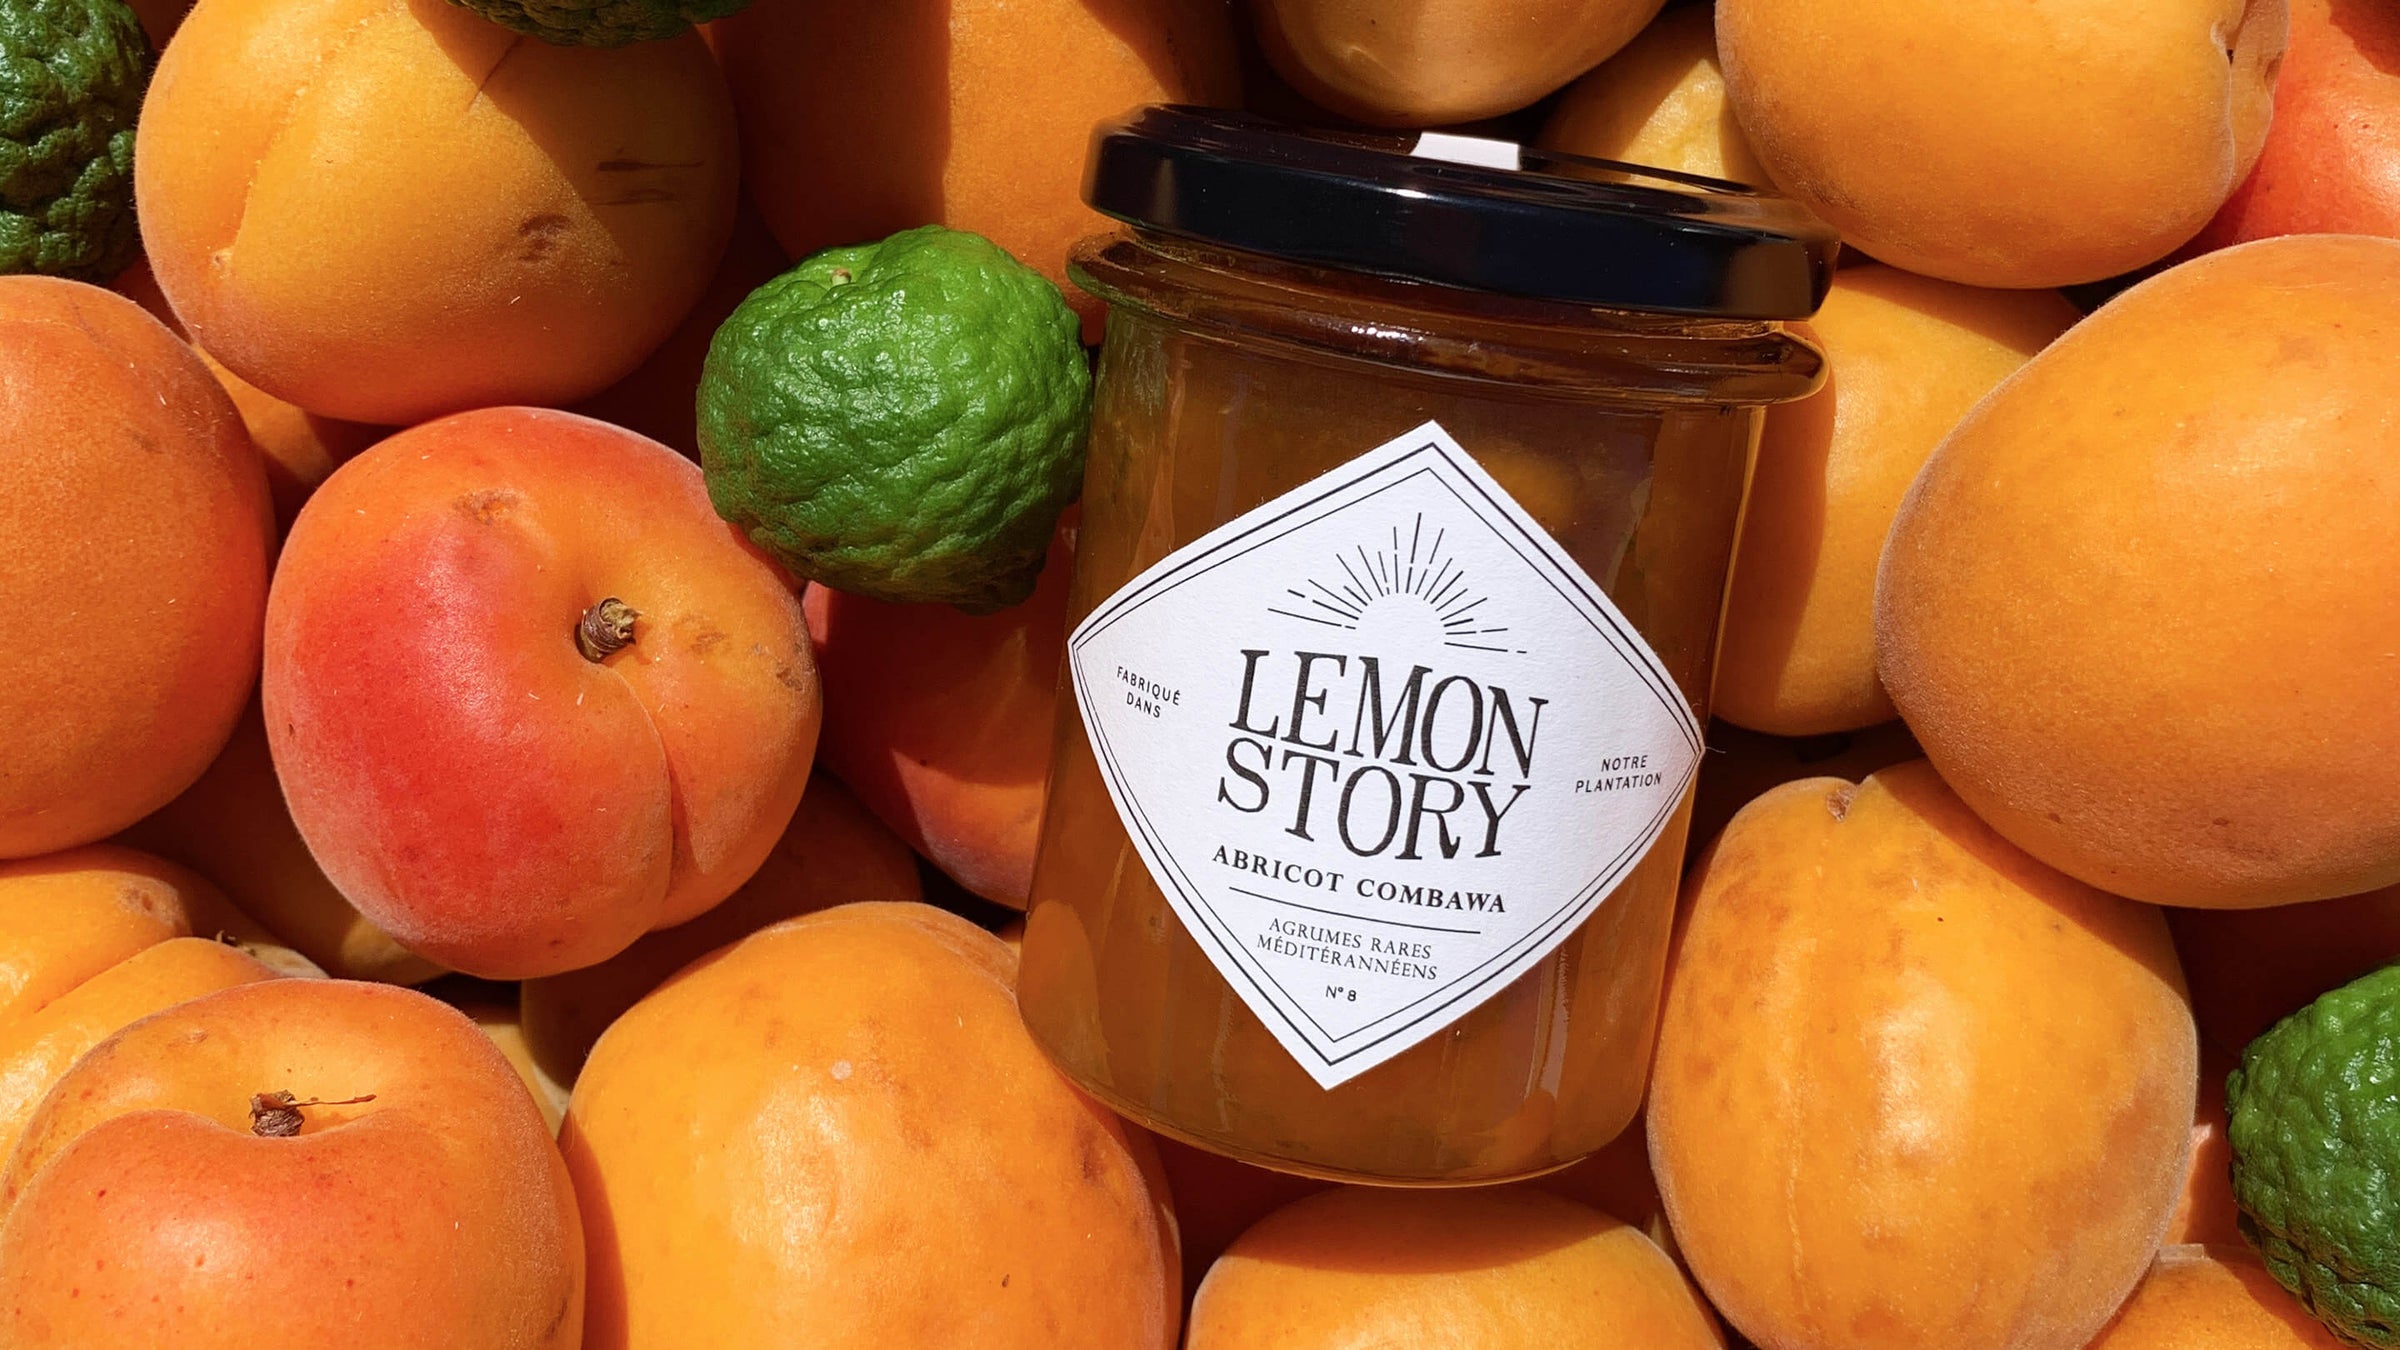 Confitures Abricot Combava - Plantation d'agrumes rares Lemon Story - La Crau France